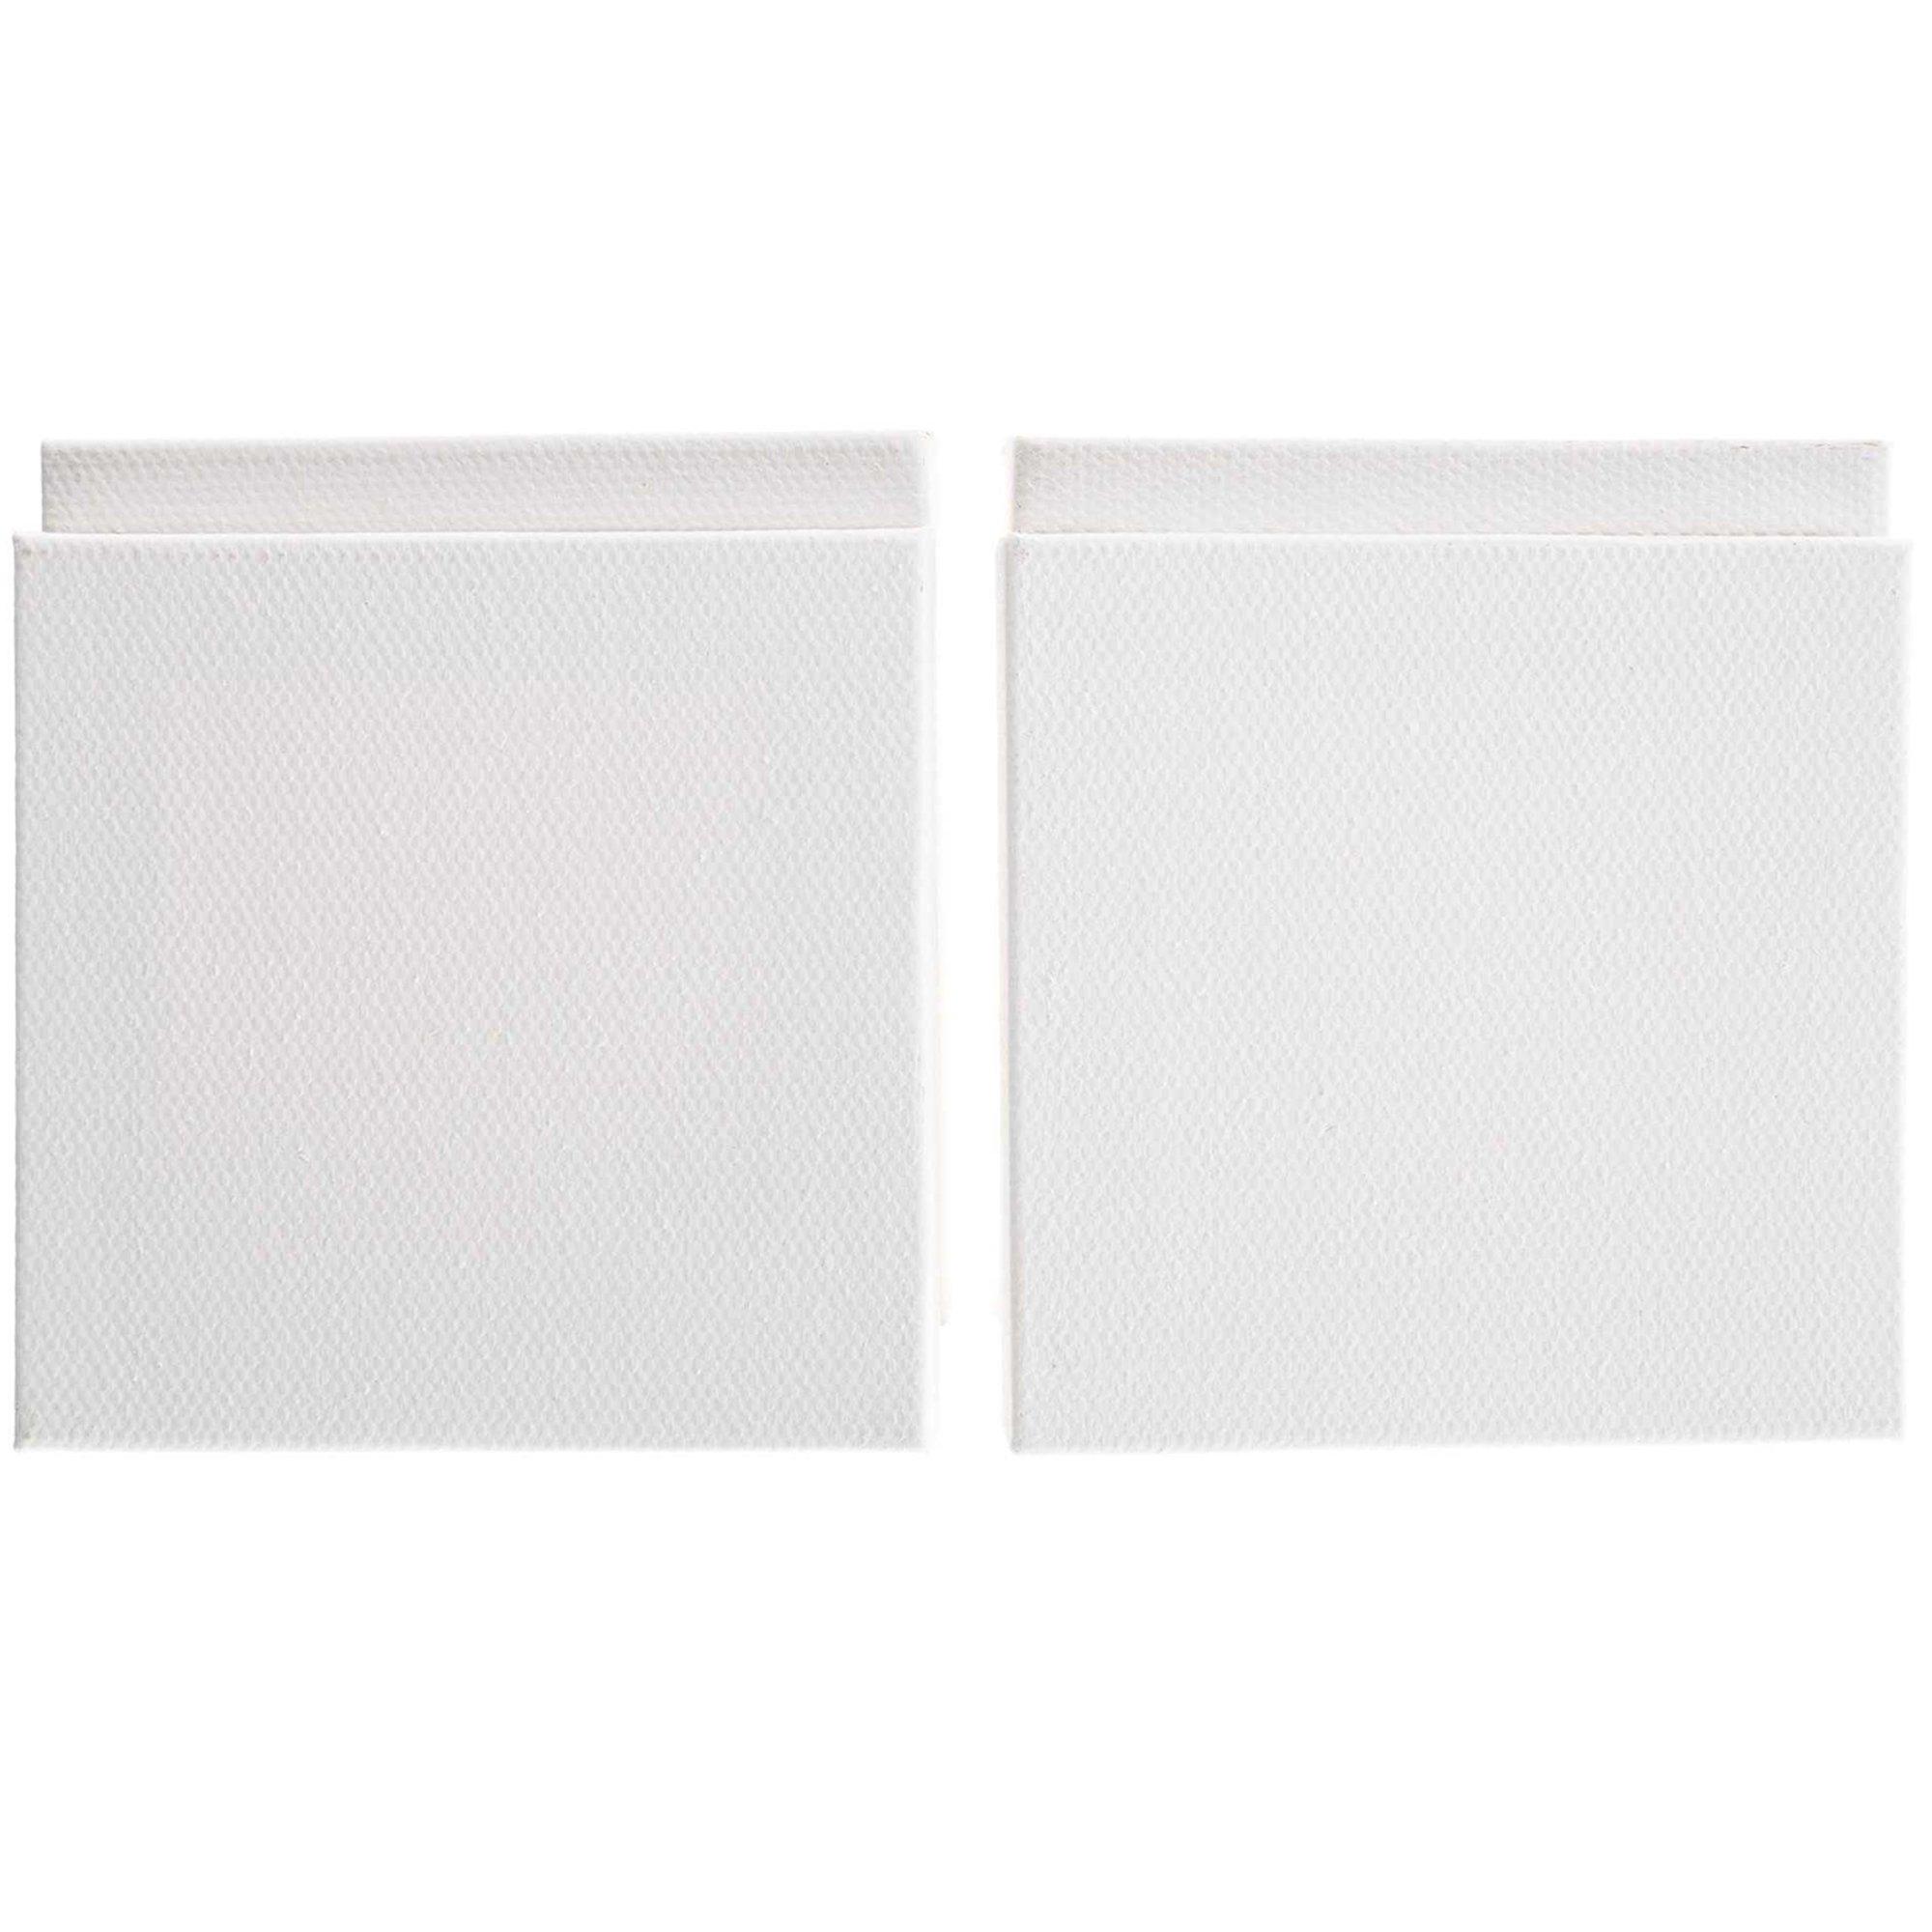 The Fine Touch Blank Canvas Set - 9 x 12, Hobby Lobby